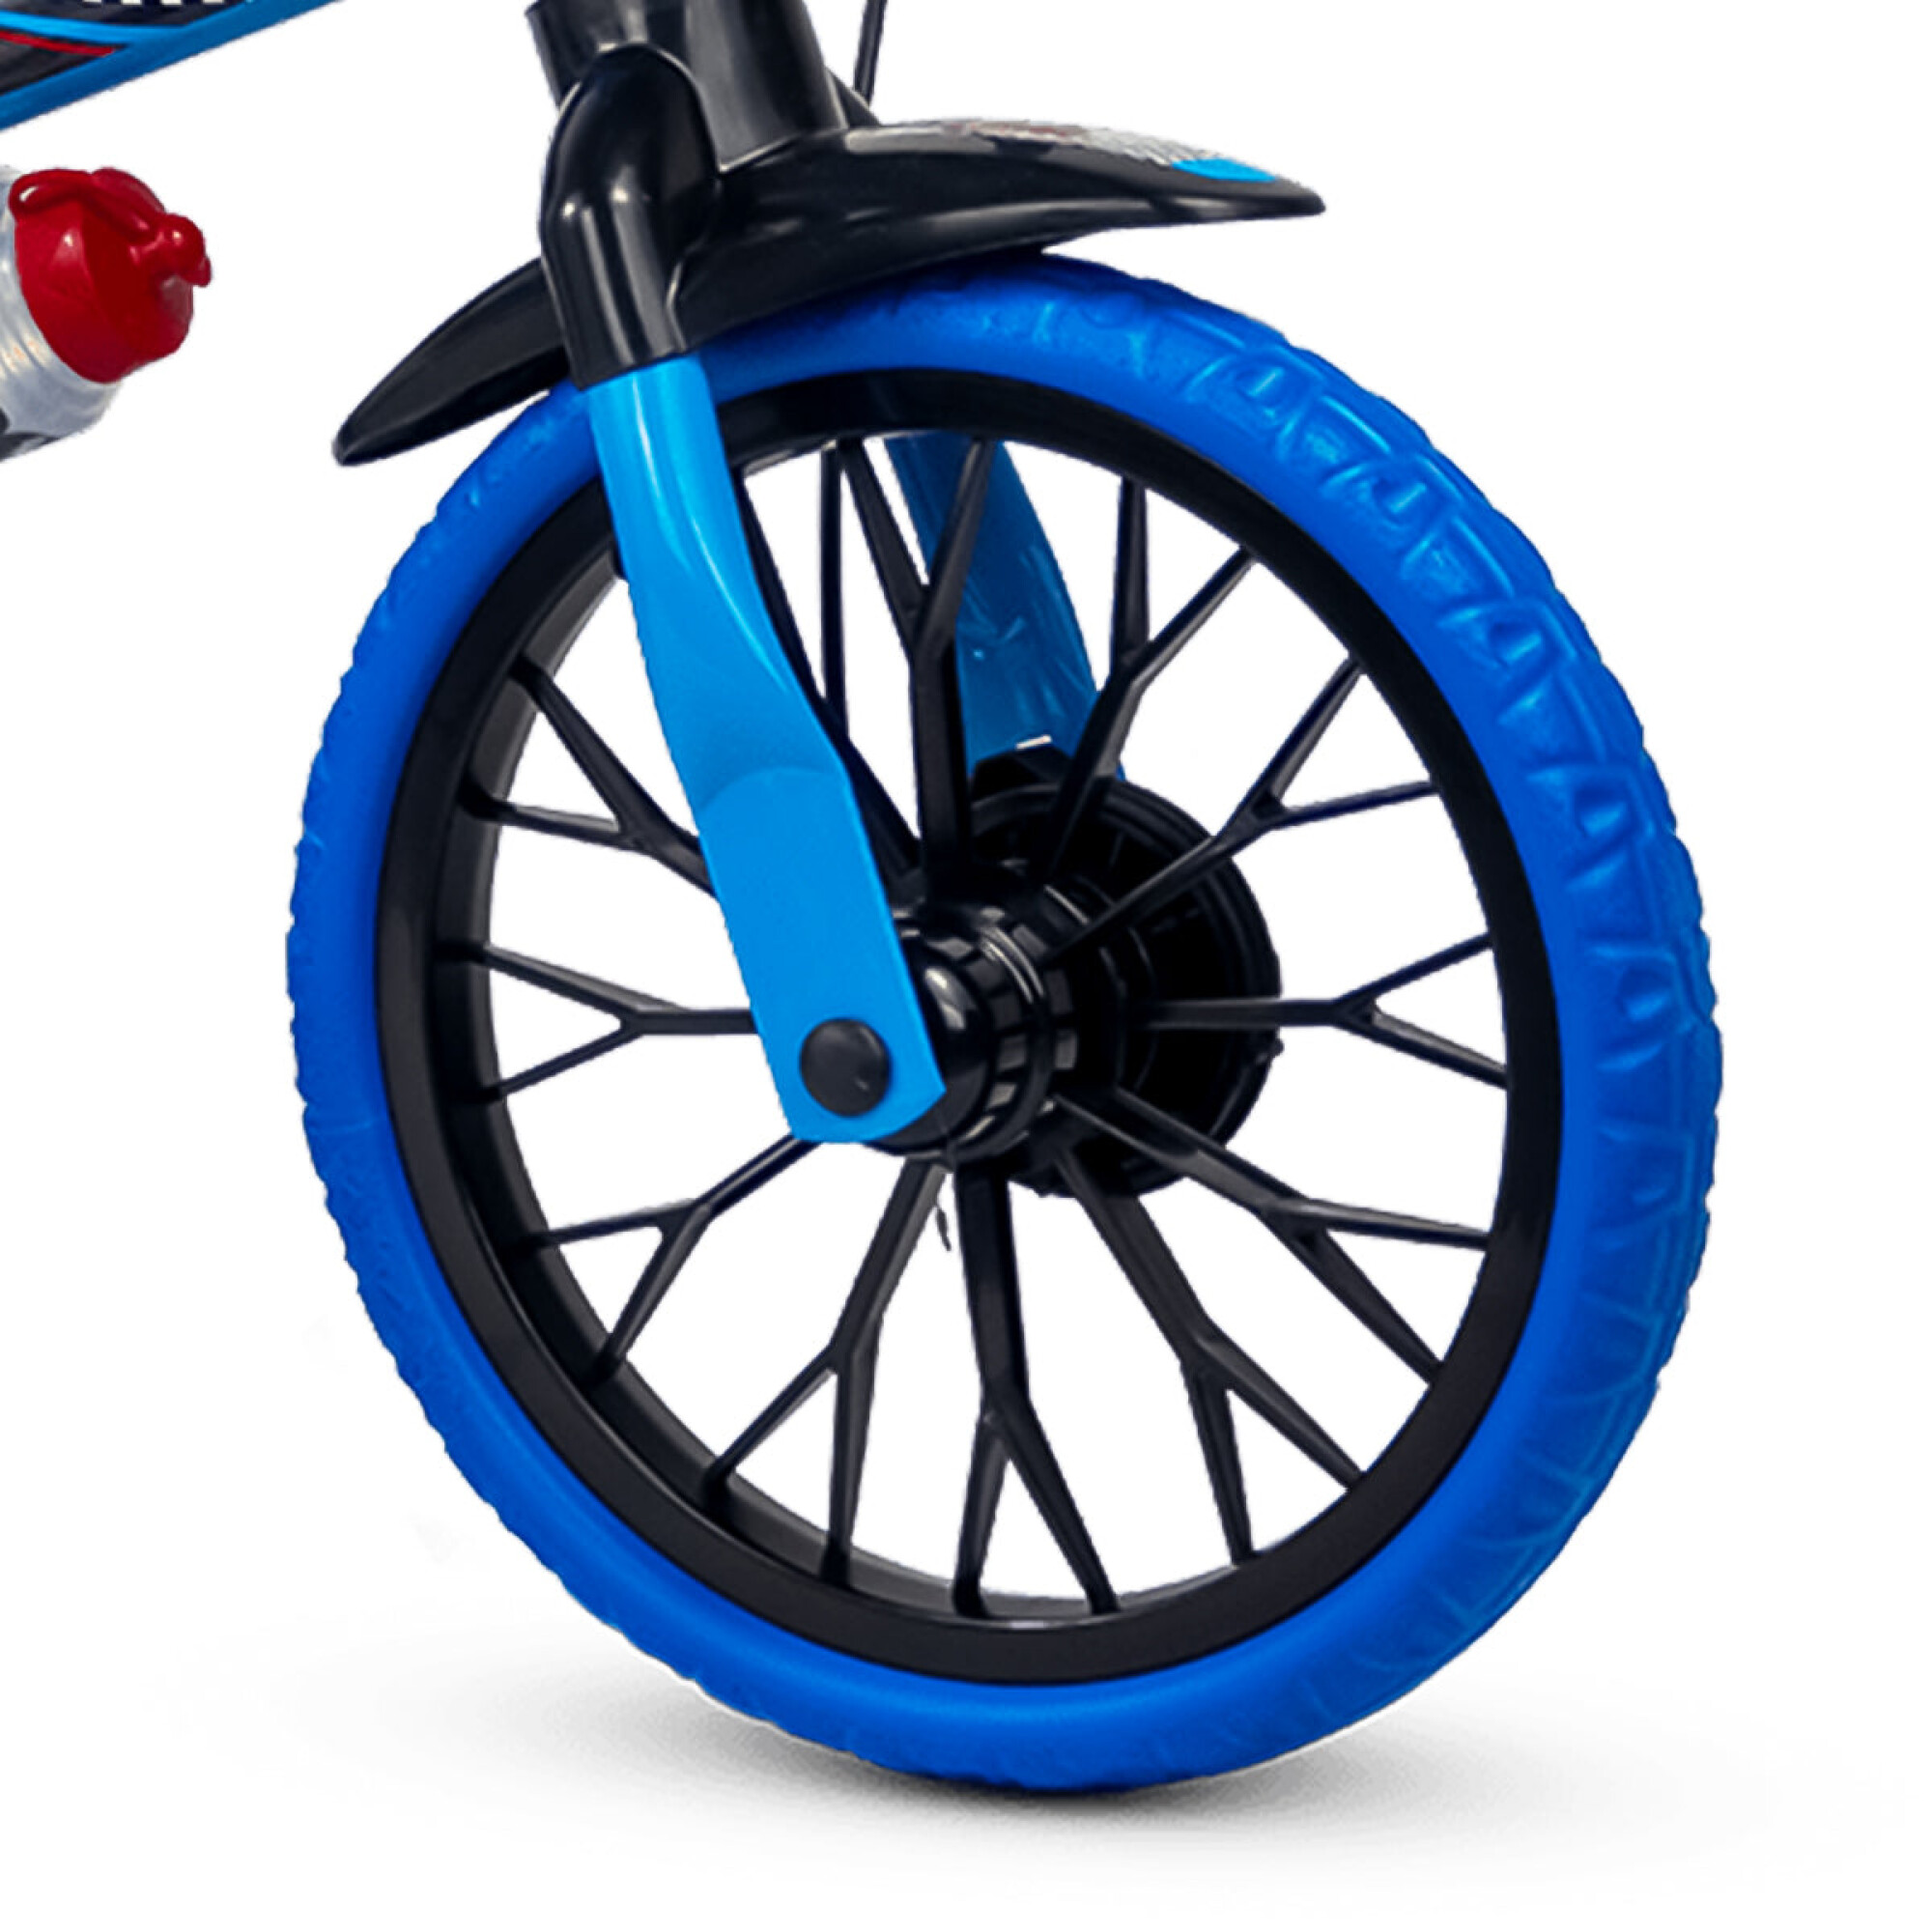 Bicicleta Niños Montana Bolt 12 Pulgadas Azul 